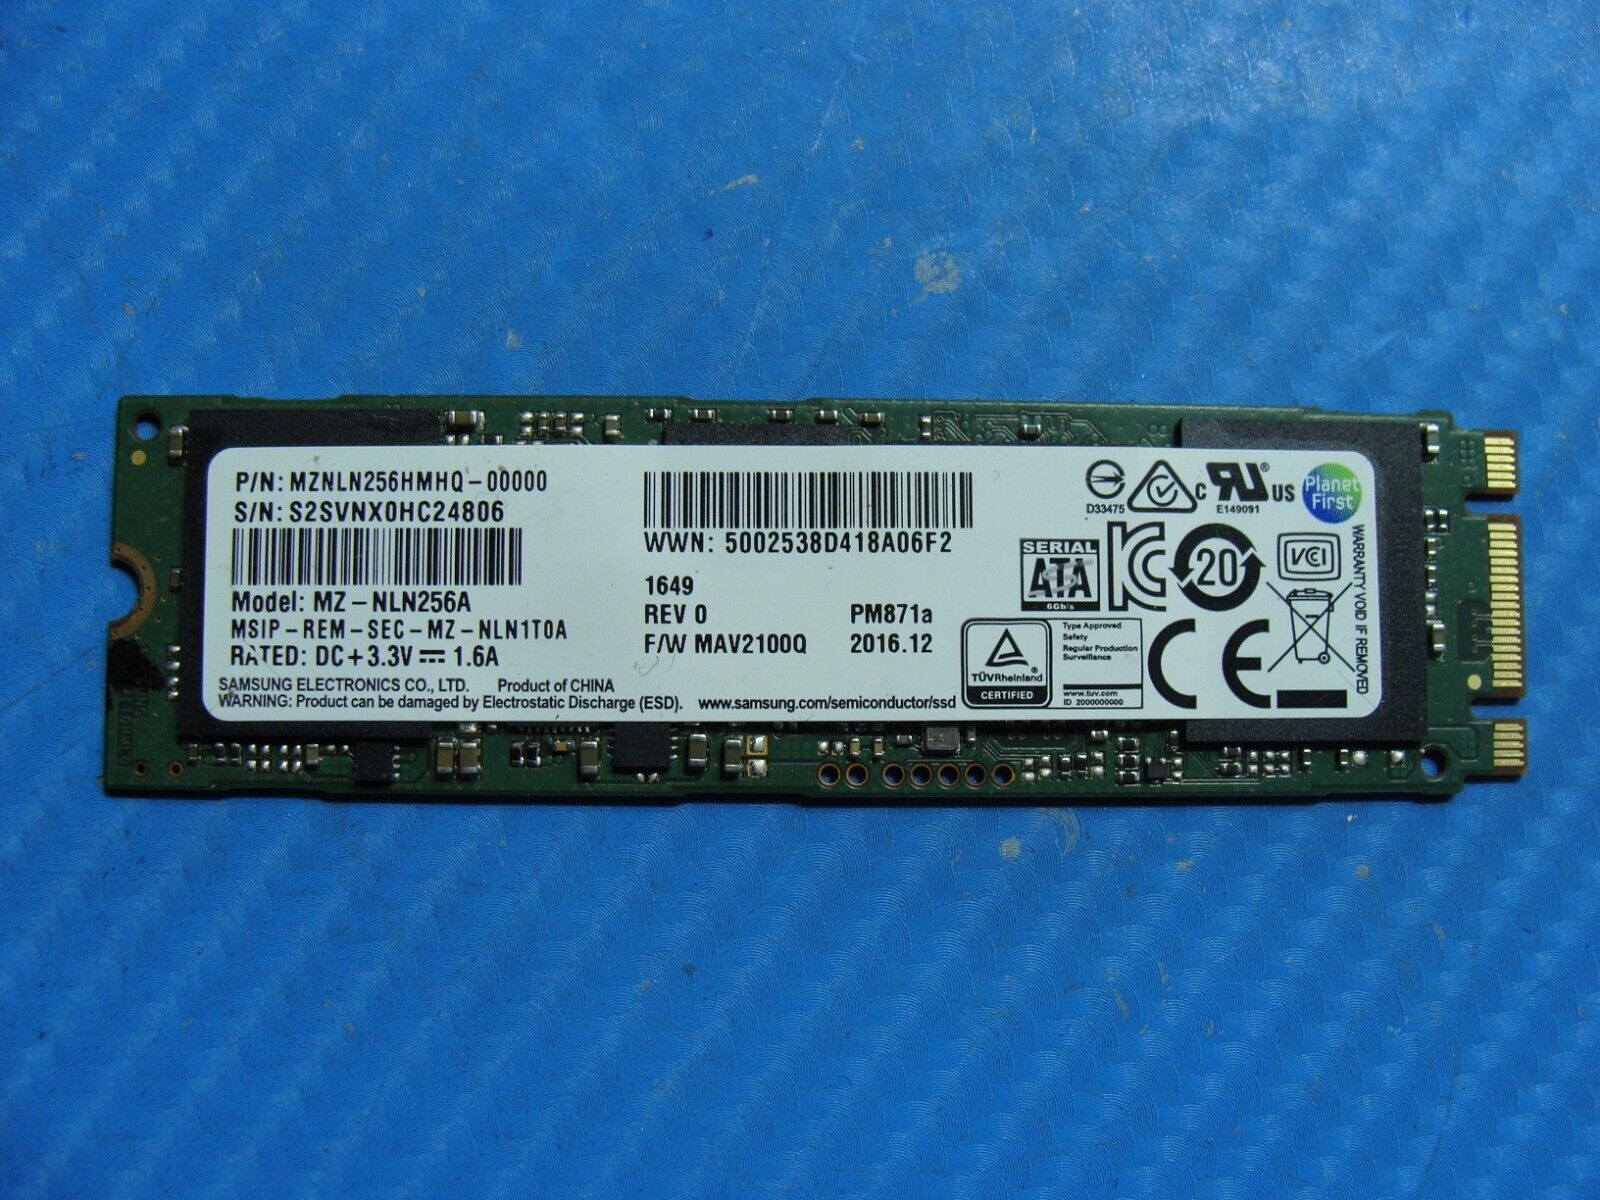 MSI GS73VR 7RF Samsung 256Gb Sata M.2 SSD Solid State Drive MZNLN256HMHQ-00000